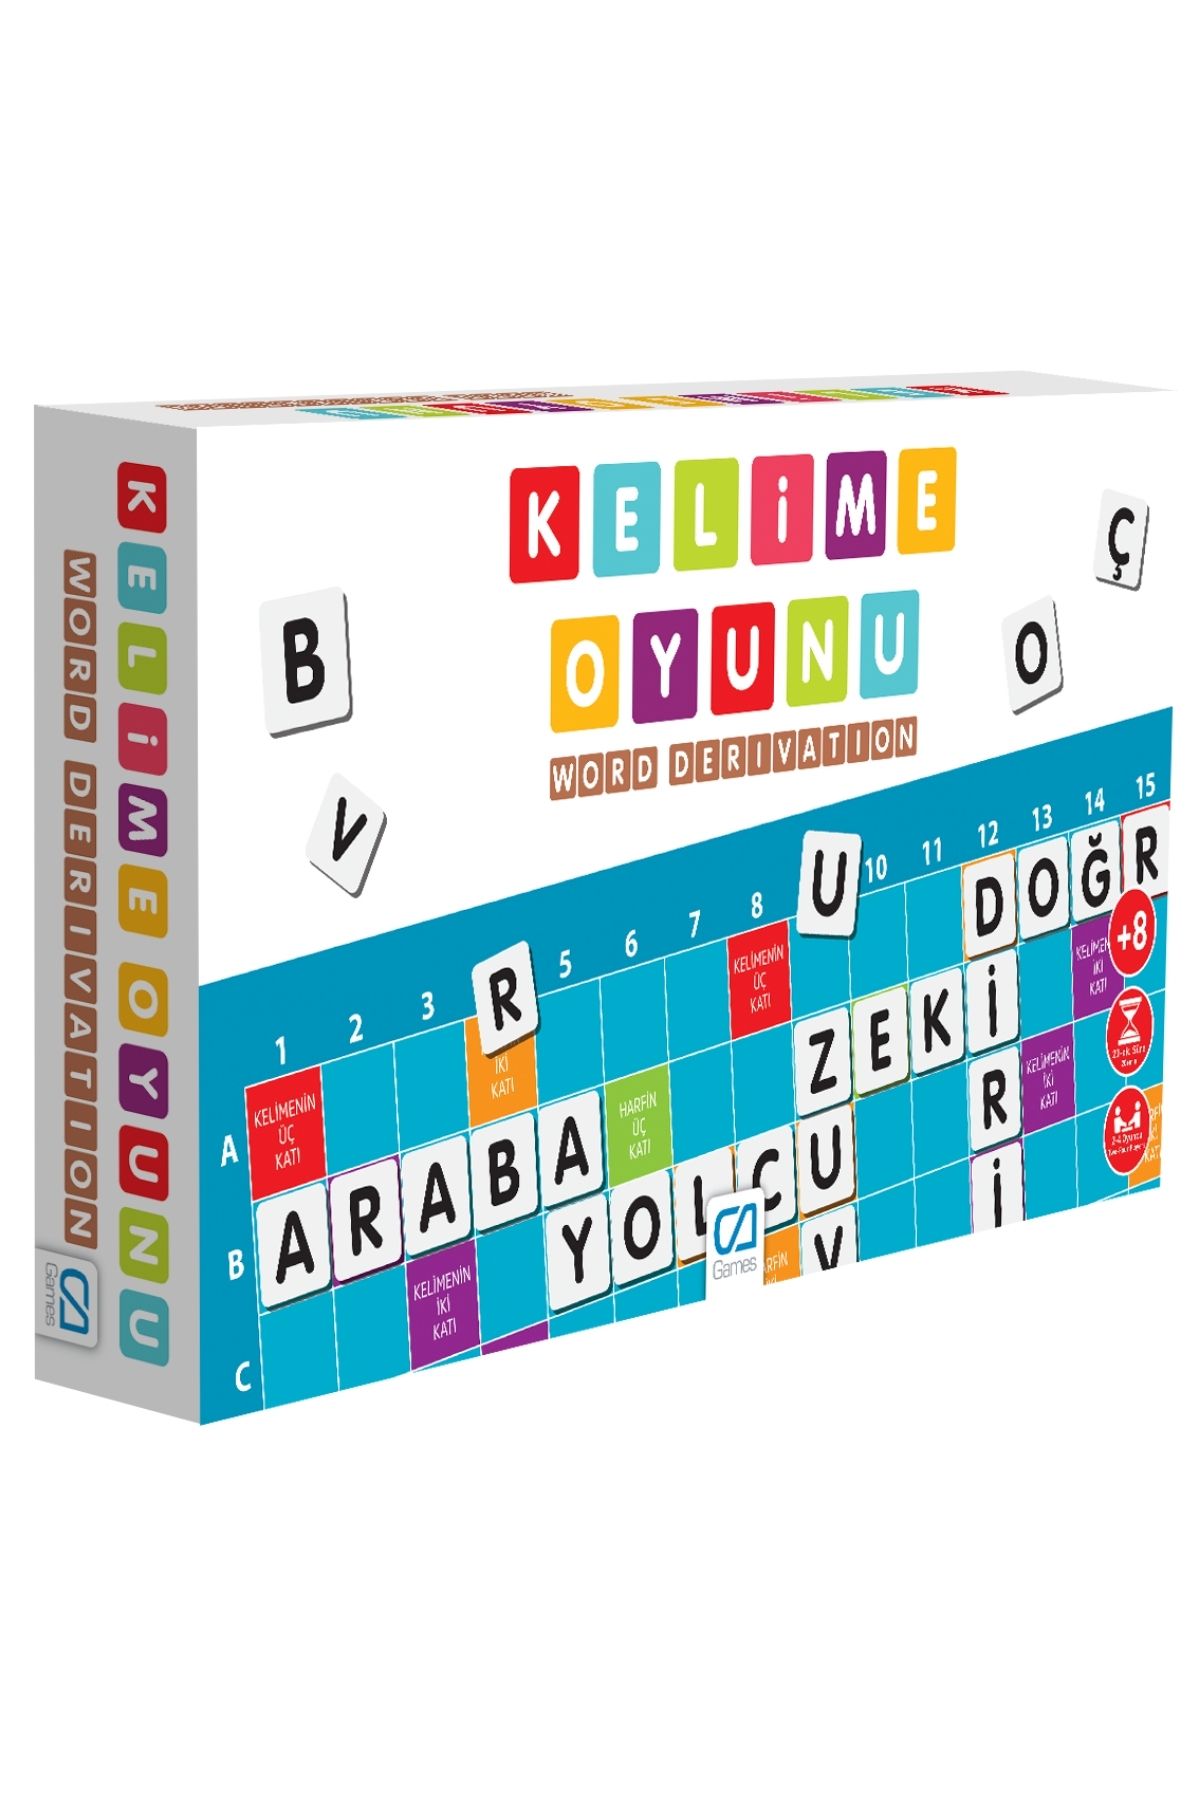 CA Games Yeni Kelime Oyunu 8+ Yaş Çocuklar için Çok Oyunculu Eğlenceli Aile Kutu Oyunu